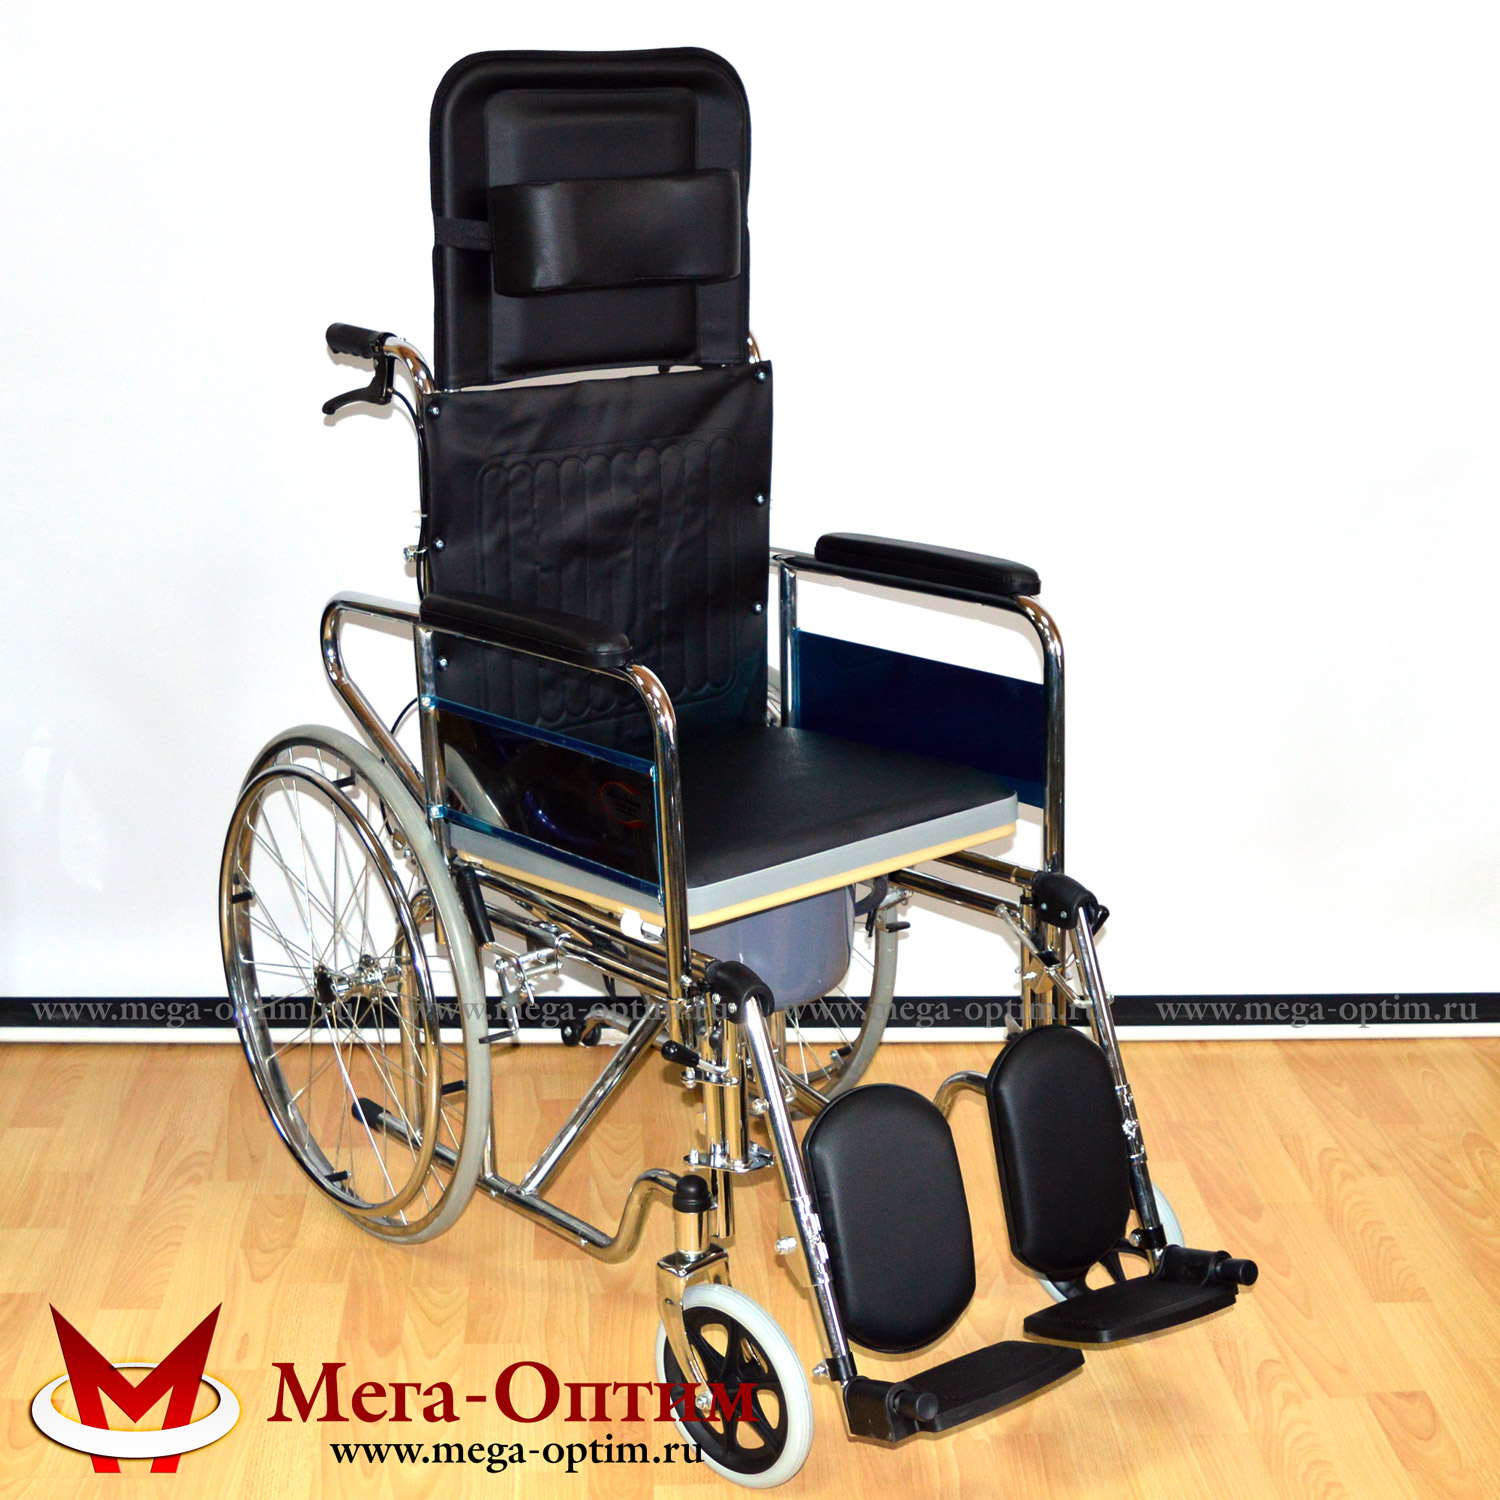 Инвалидная коляска с высокой спинкой стальная с санитарным устройством FS 902 GC-46 МЕГА-ОПТИМ